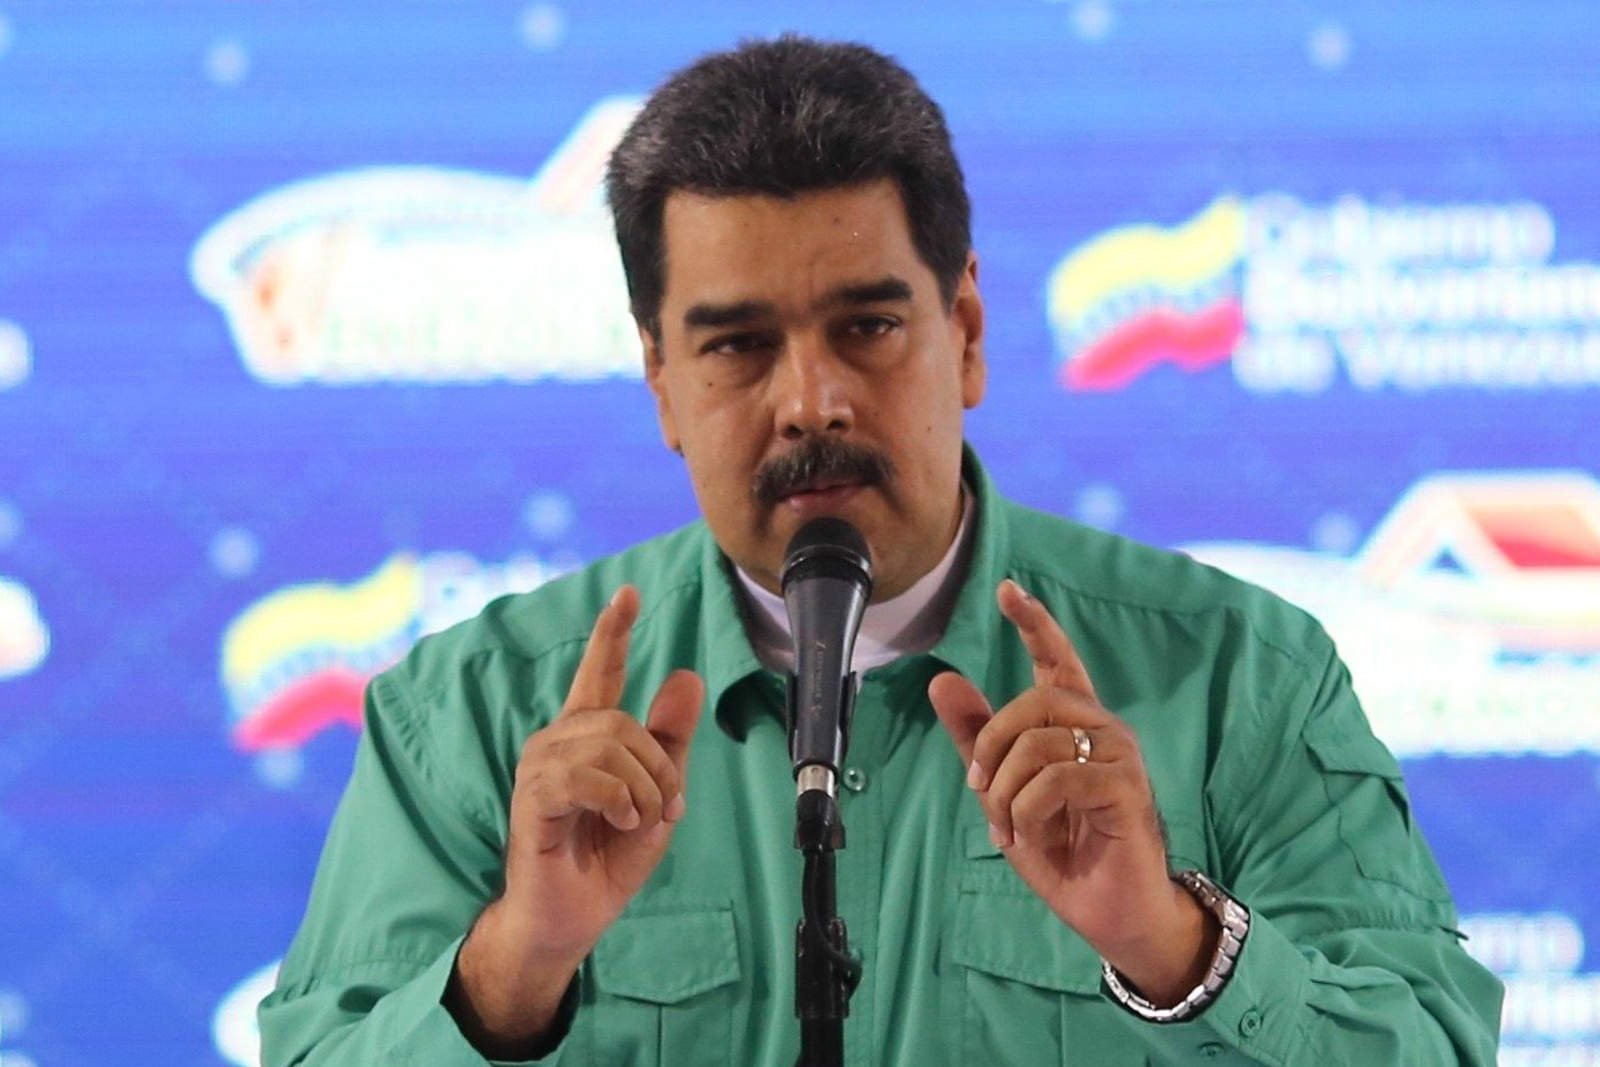 'Yo soy presidente de la república para hacer una revolución, para ser presidente de una revolución popular, ser un presidente del pueblo”, aseveró Maduro, quien indicó que se prepara para asumir un segundo mandato hasta 2025. (EFE)